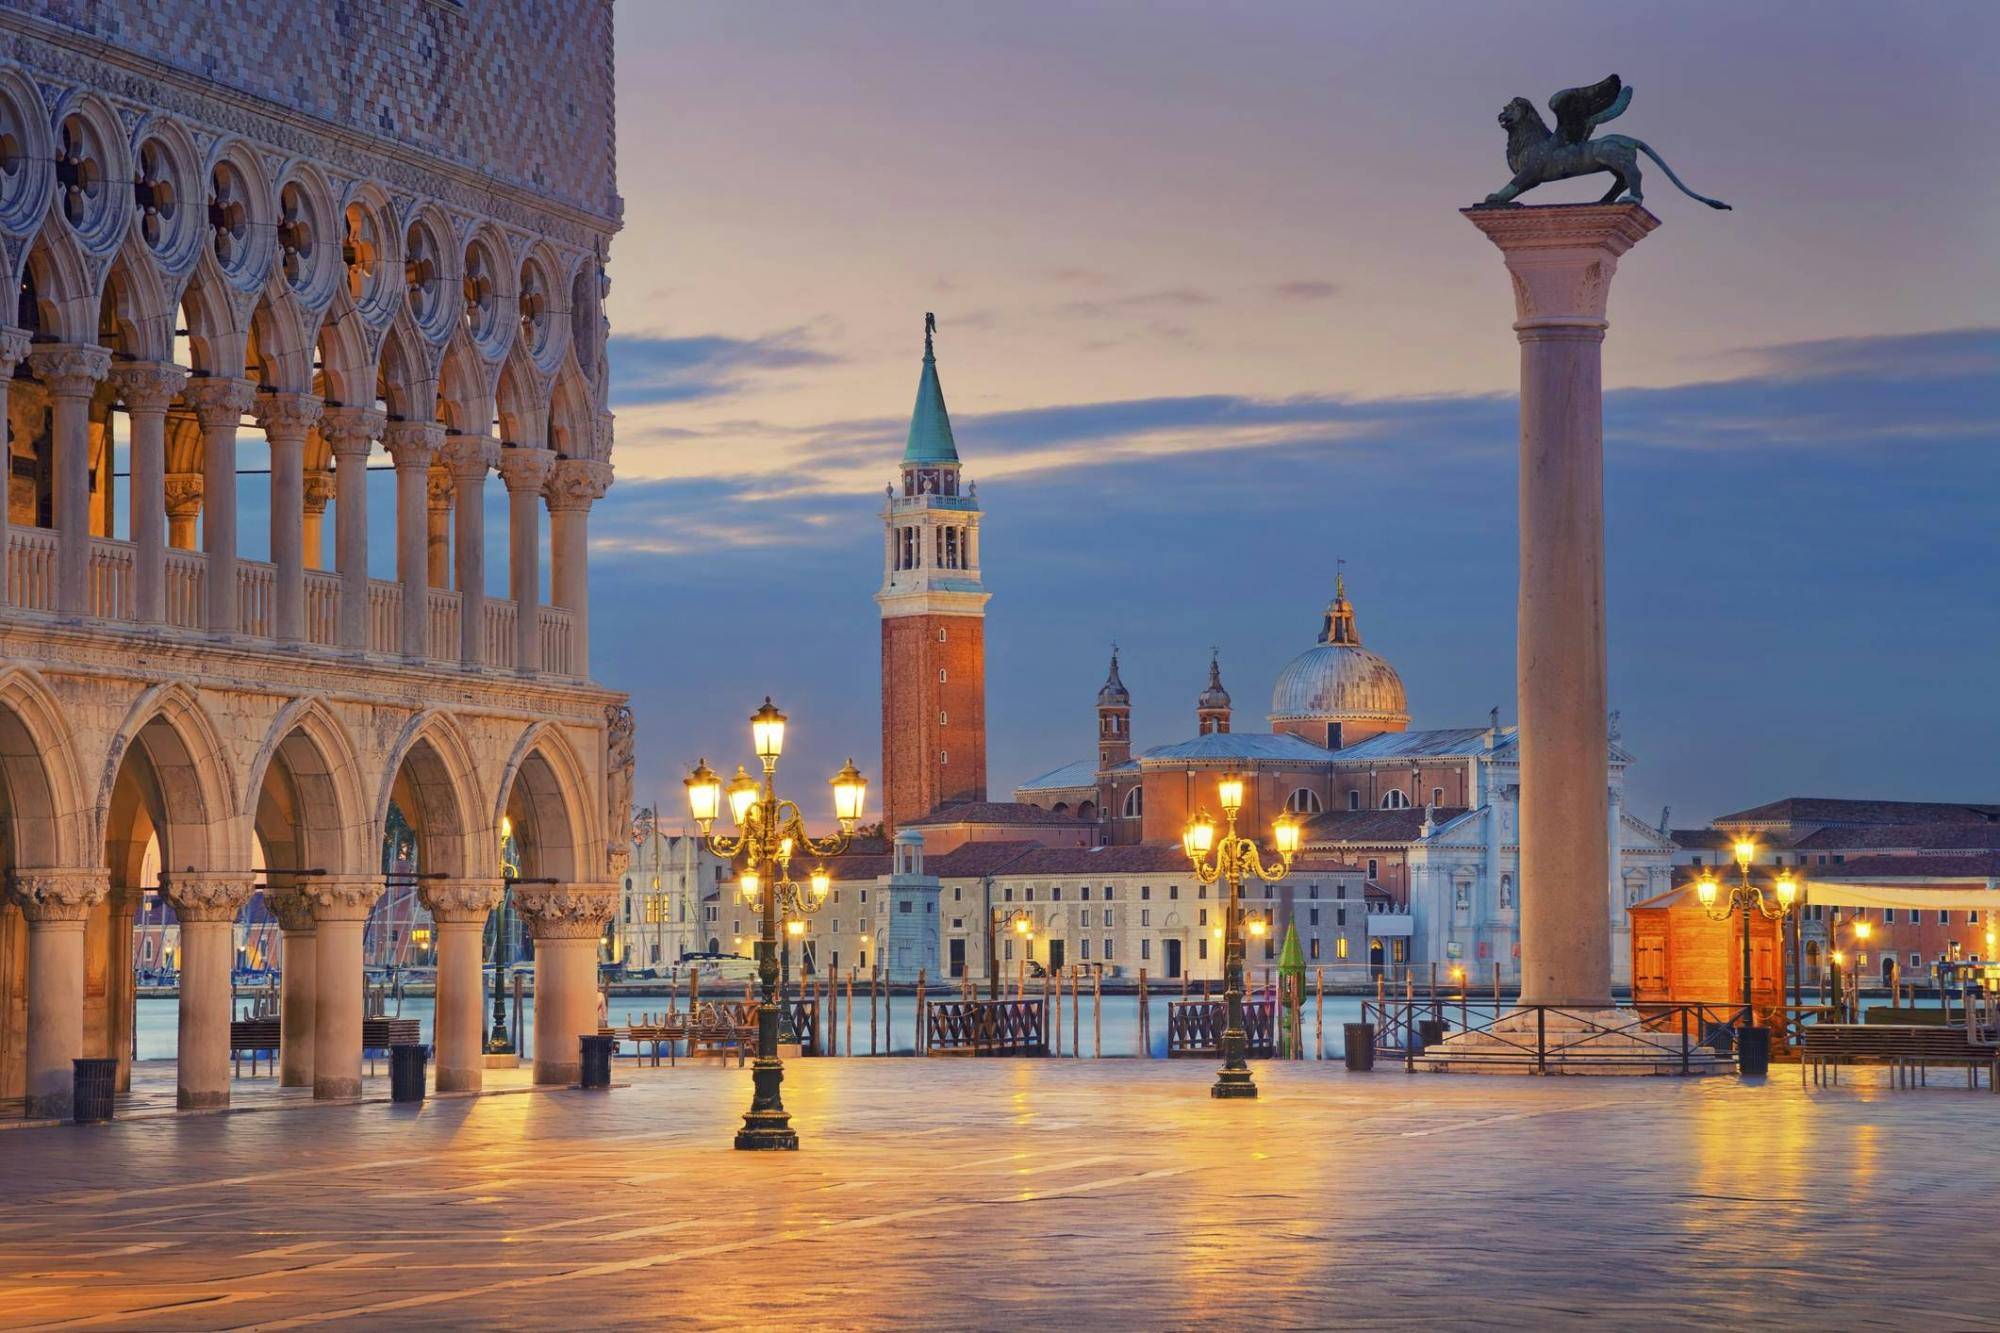 Audiotour durch die Stadt Venedig und Ticket für den Markusdom mit Audioguide